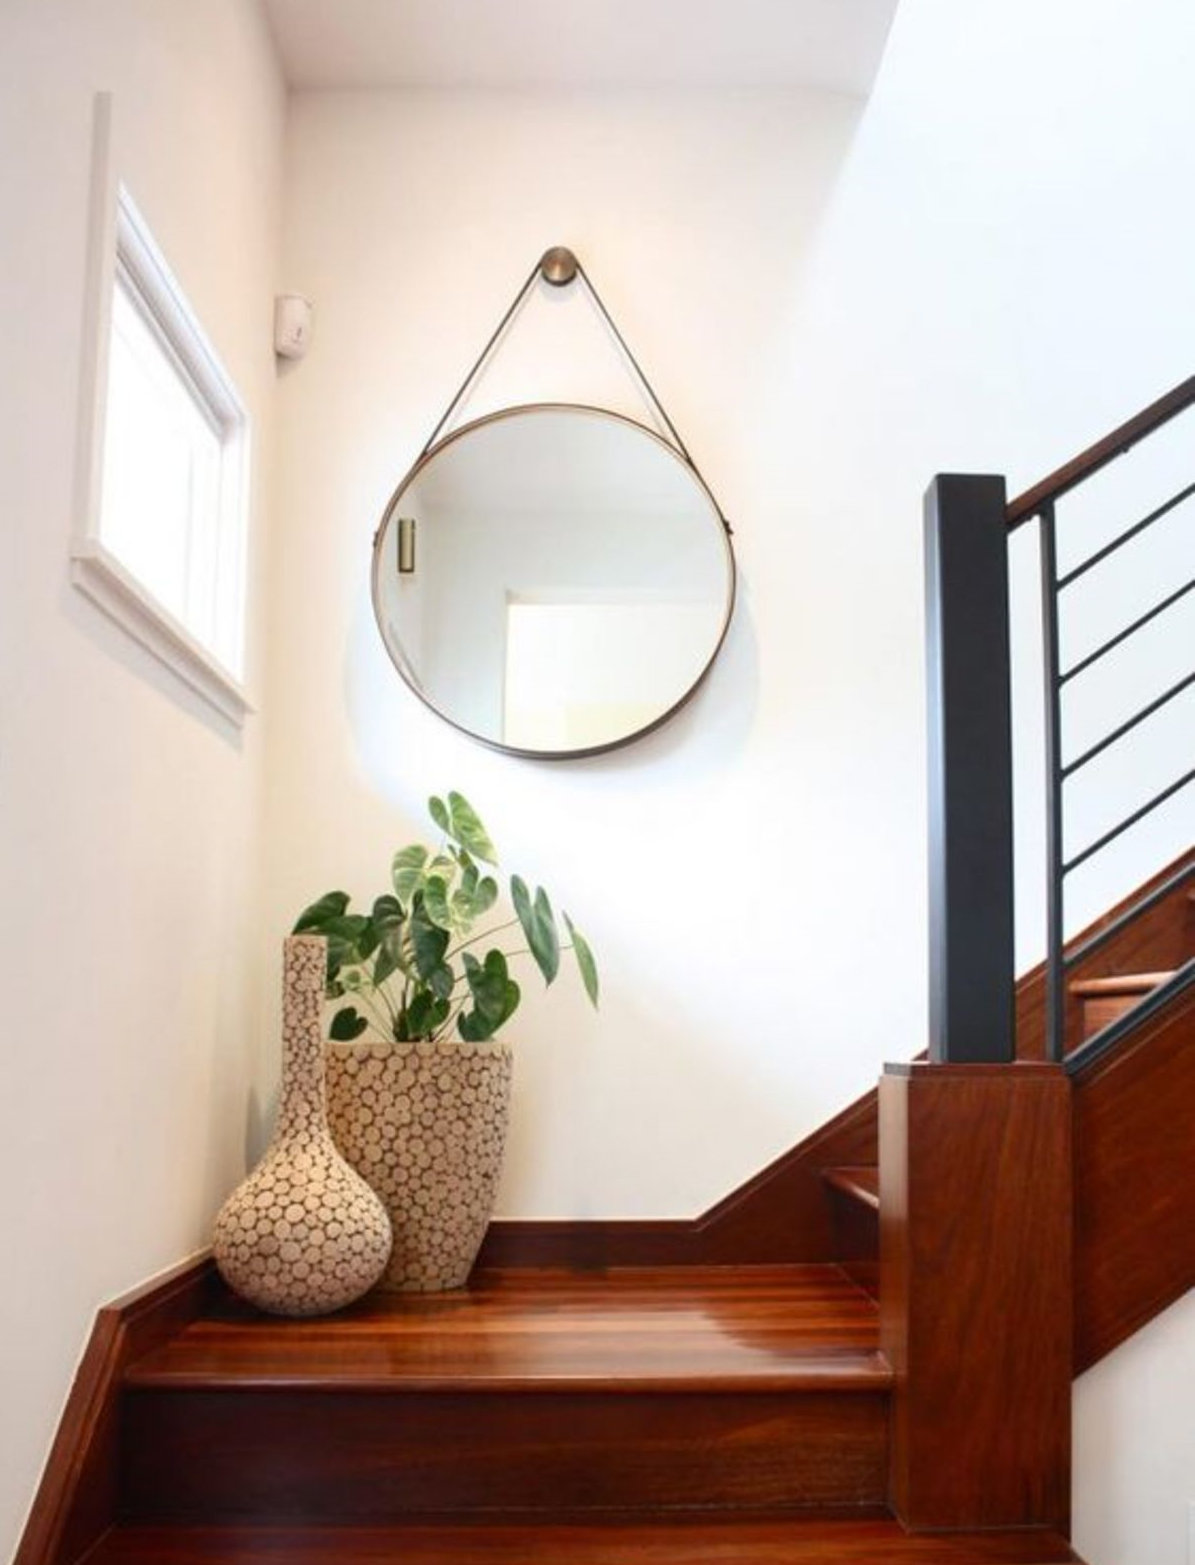 Bạn có thể treo một tấm gương to tròn trên tường, nơi chuyển tiếp giữa cầu thang.